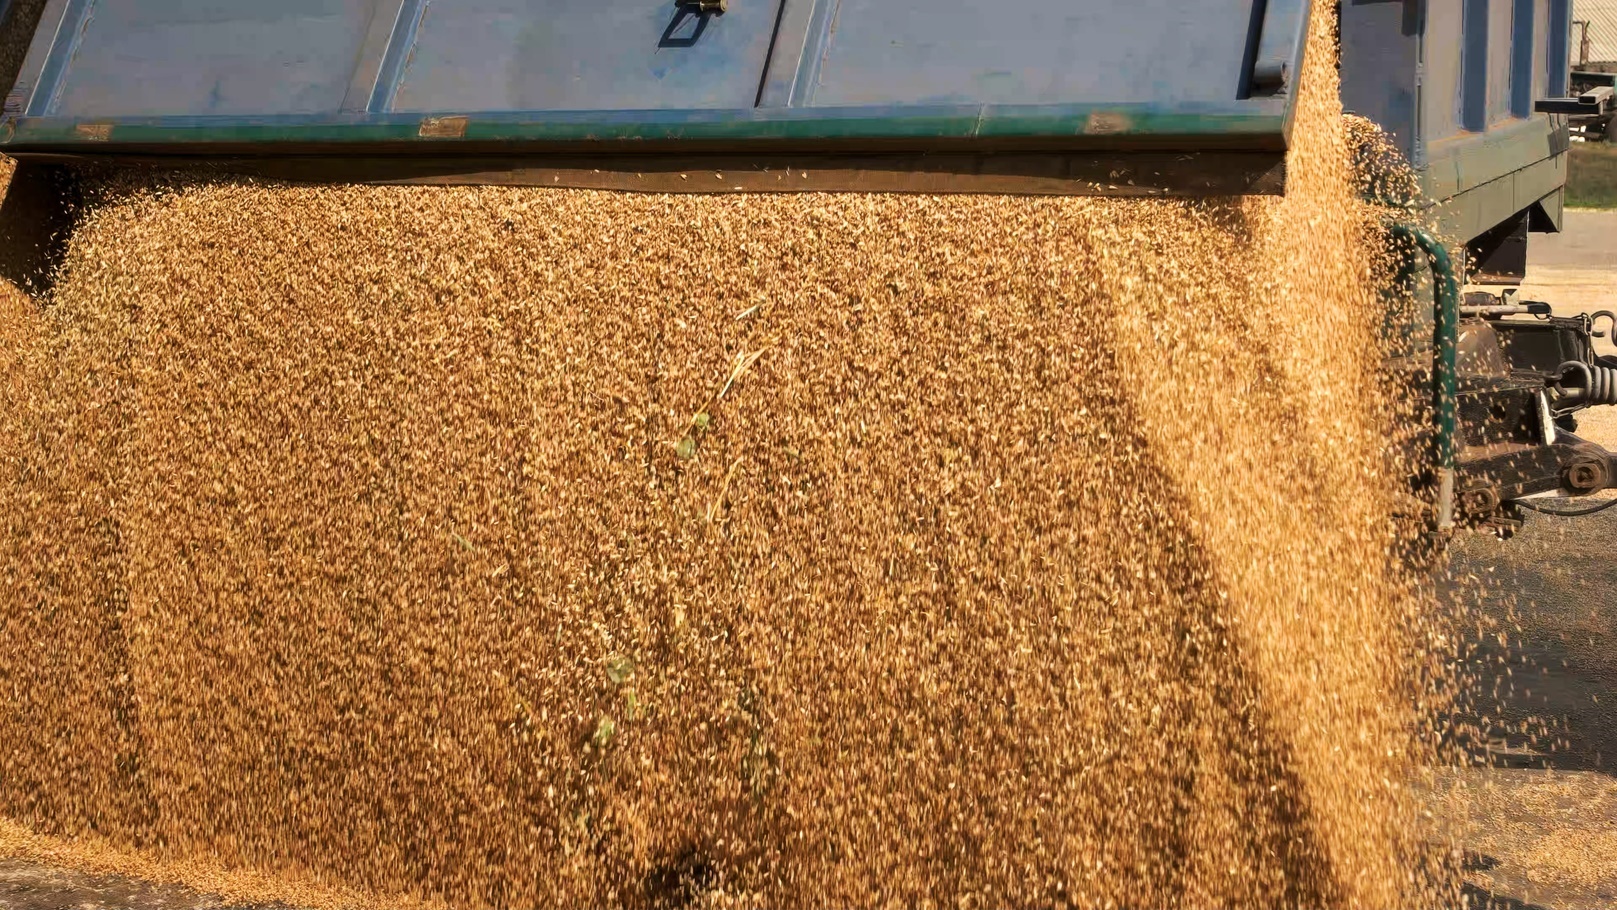 corn-grain-pouring-in-a-agricultural-silo-2022-01-28-11-12-18-utc